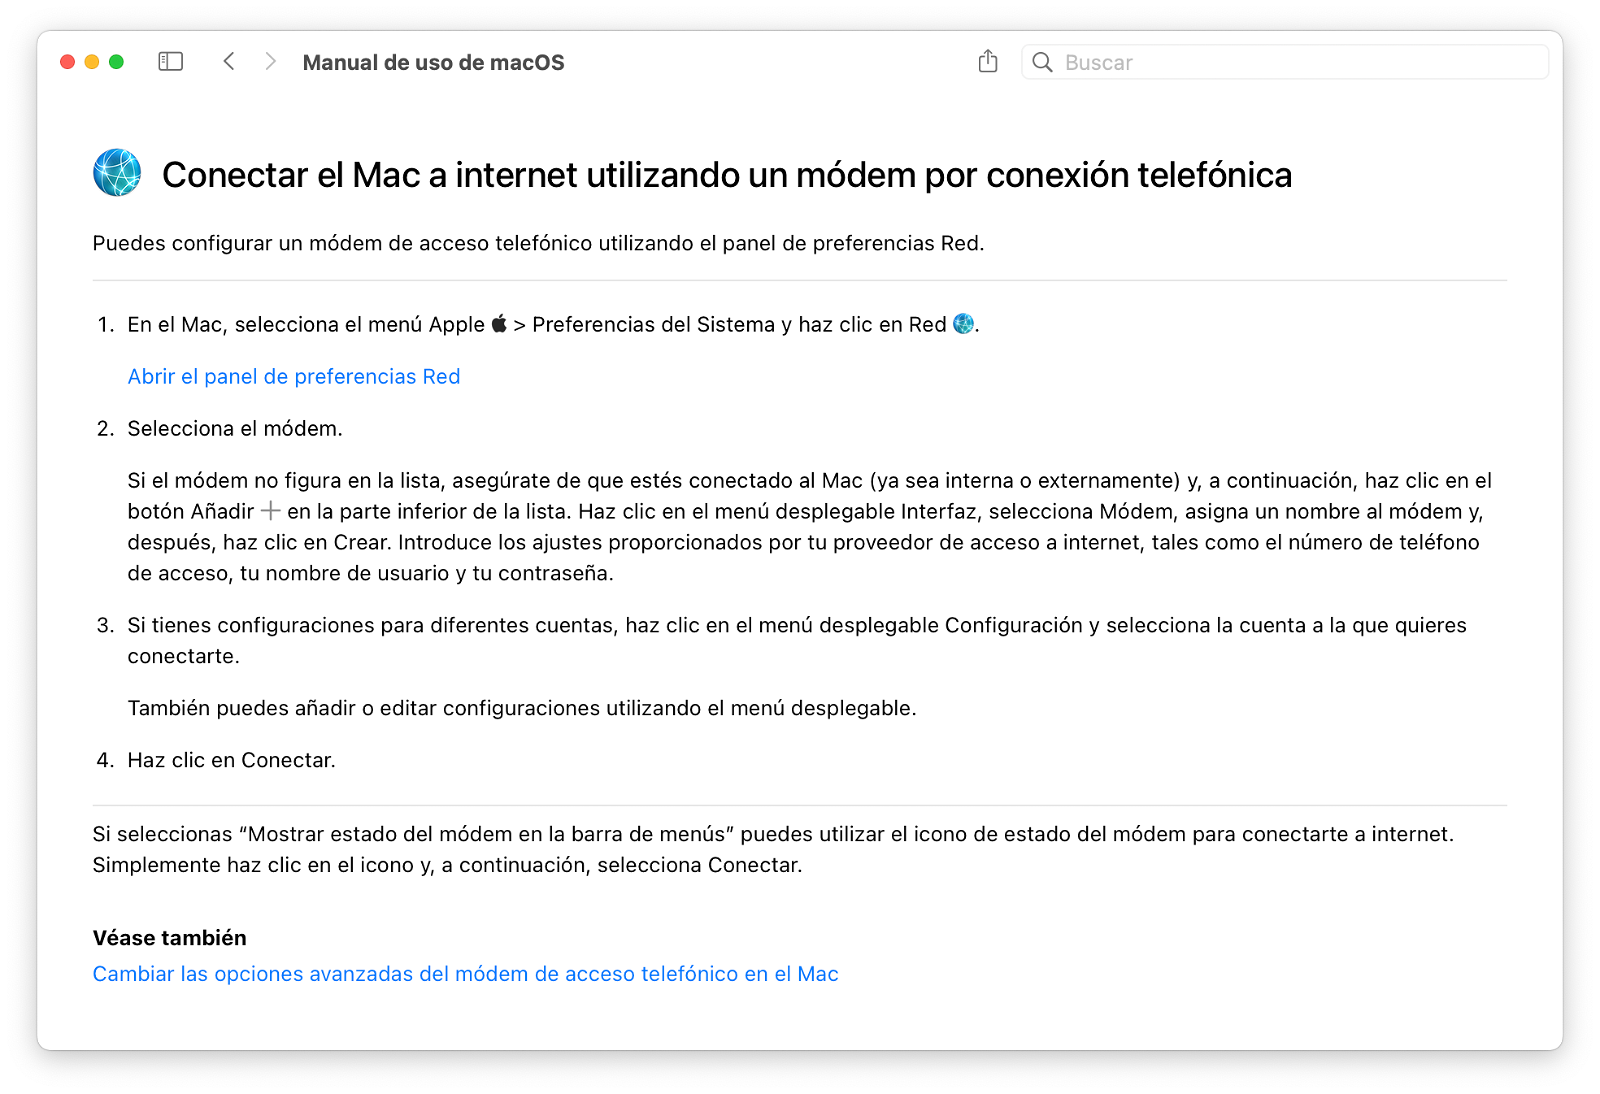 Conectar el Mac a internet utilizando un módem por conexión telefónica: manual de uso de macOS